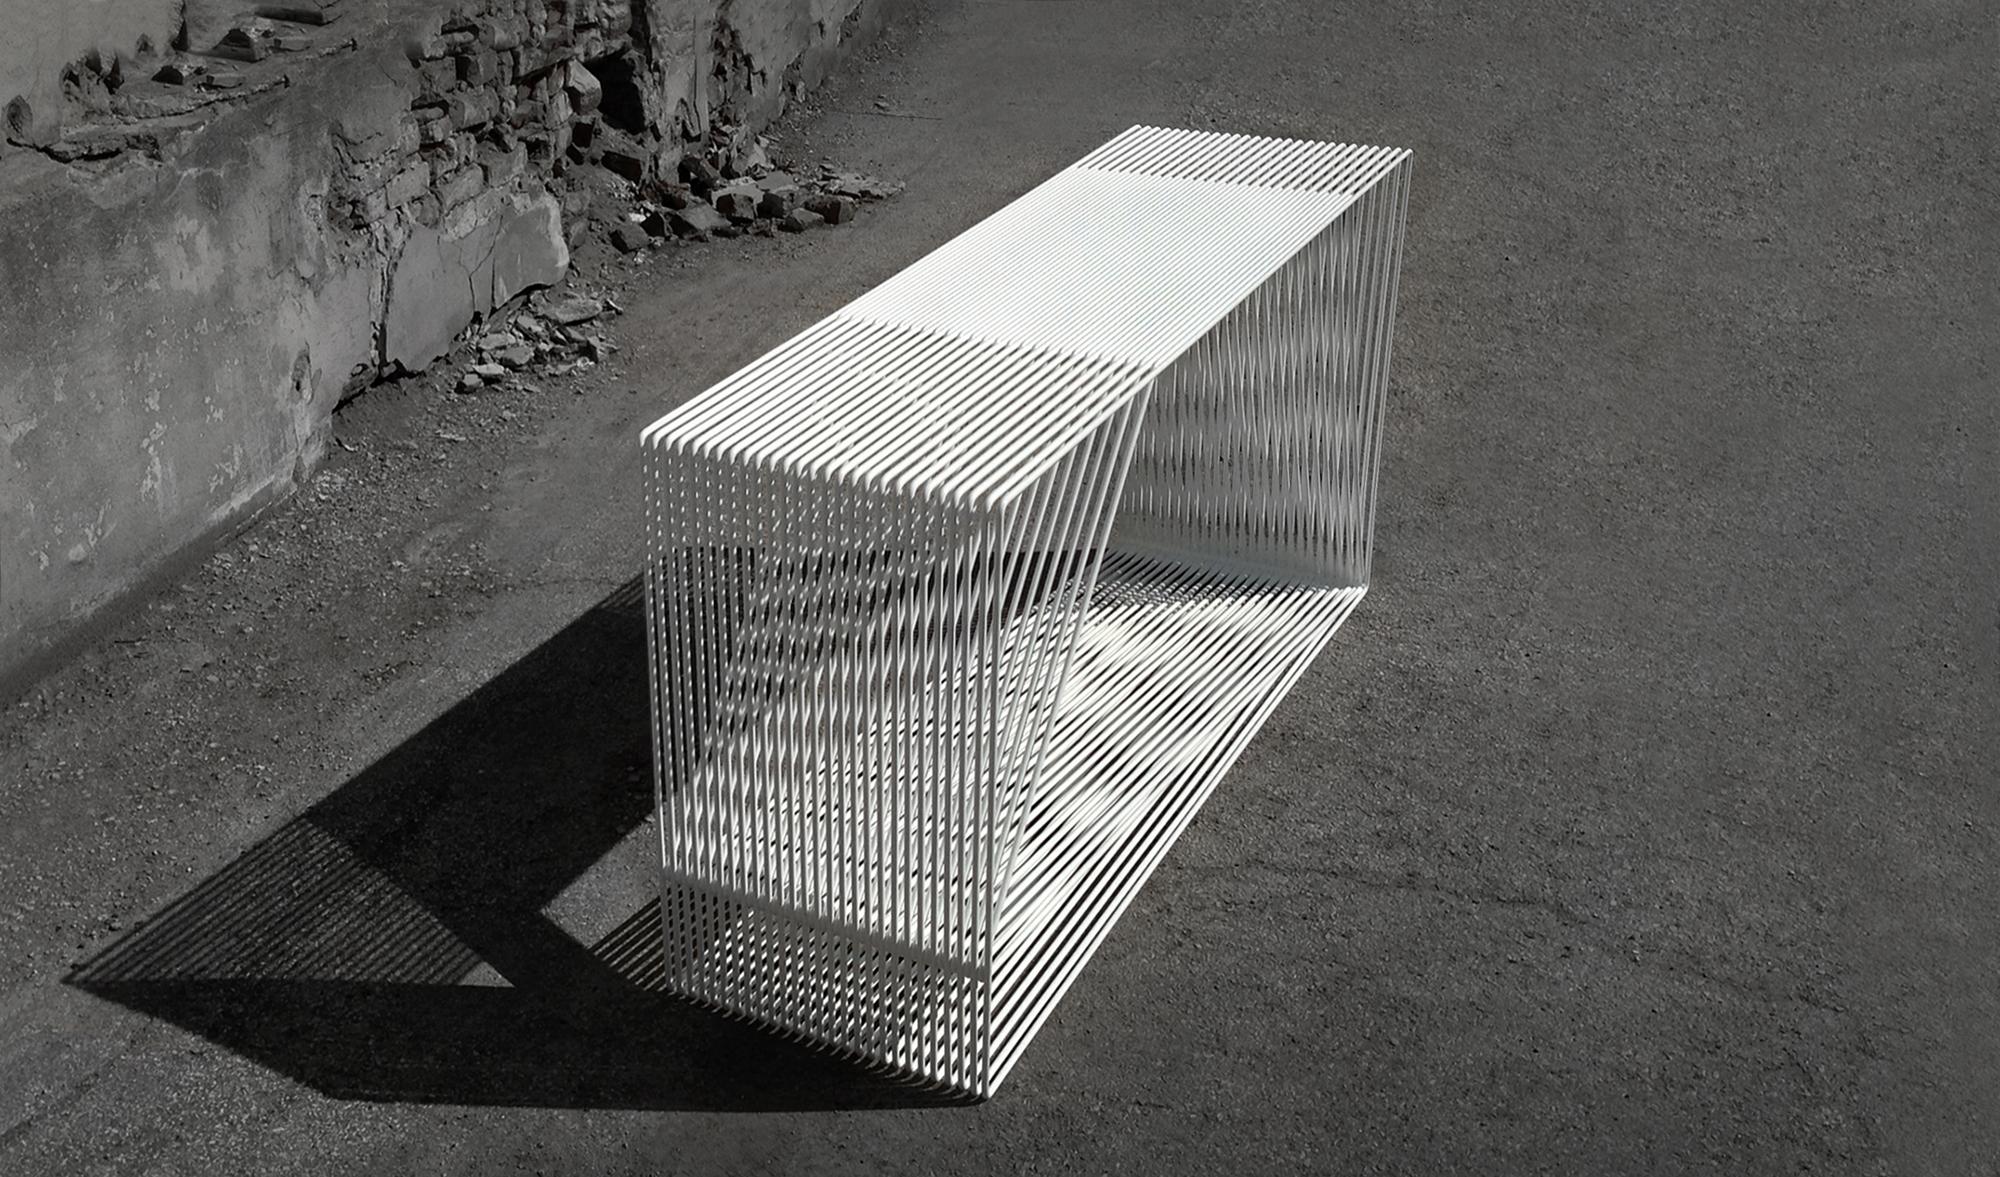 Die Tischserie Loop ist ein völlig einzigartiges Design, das von den großen Drahtmöbeln der Mid-Century-Ära inspiriert ist. Sein Design basiert auf Wiederholungen, Endlosschleifen und kritischen Schnittpunkten. Die Tische bestehen aus zwei sich